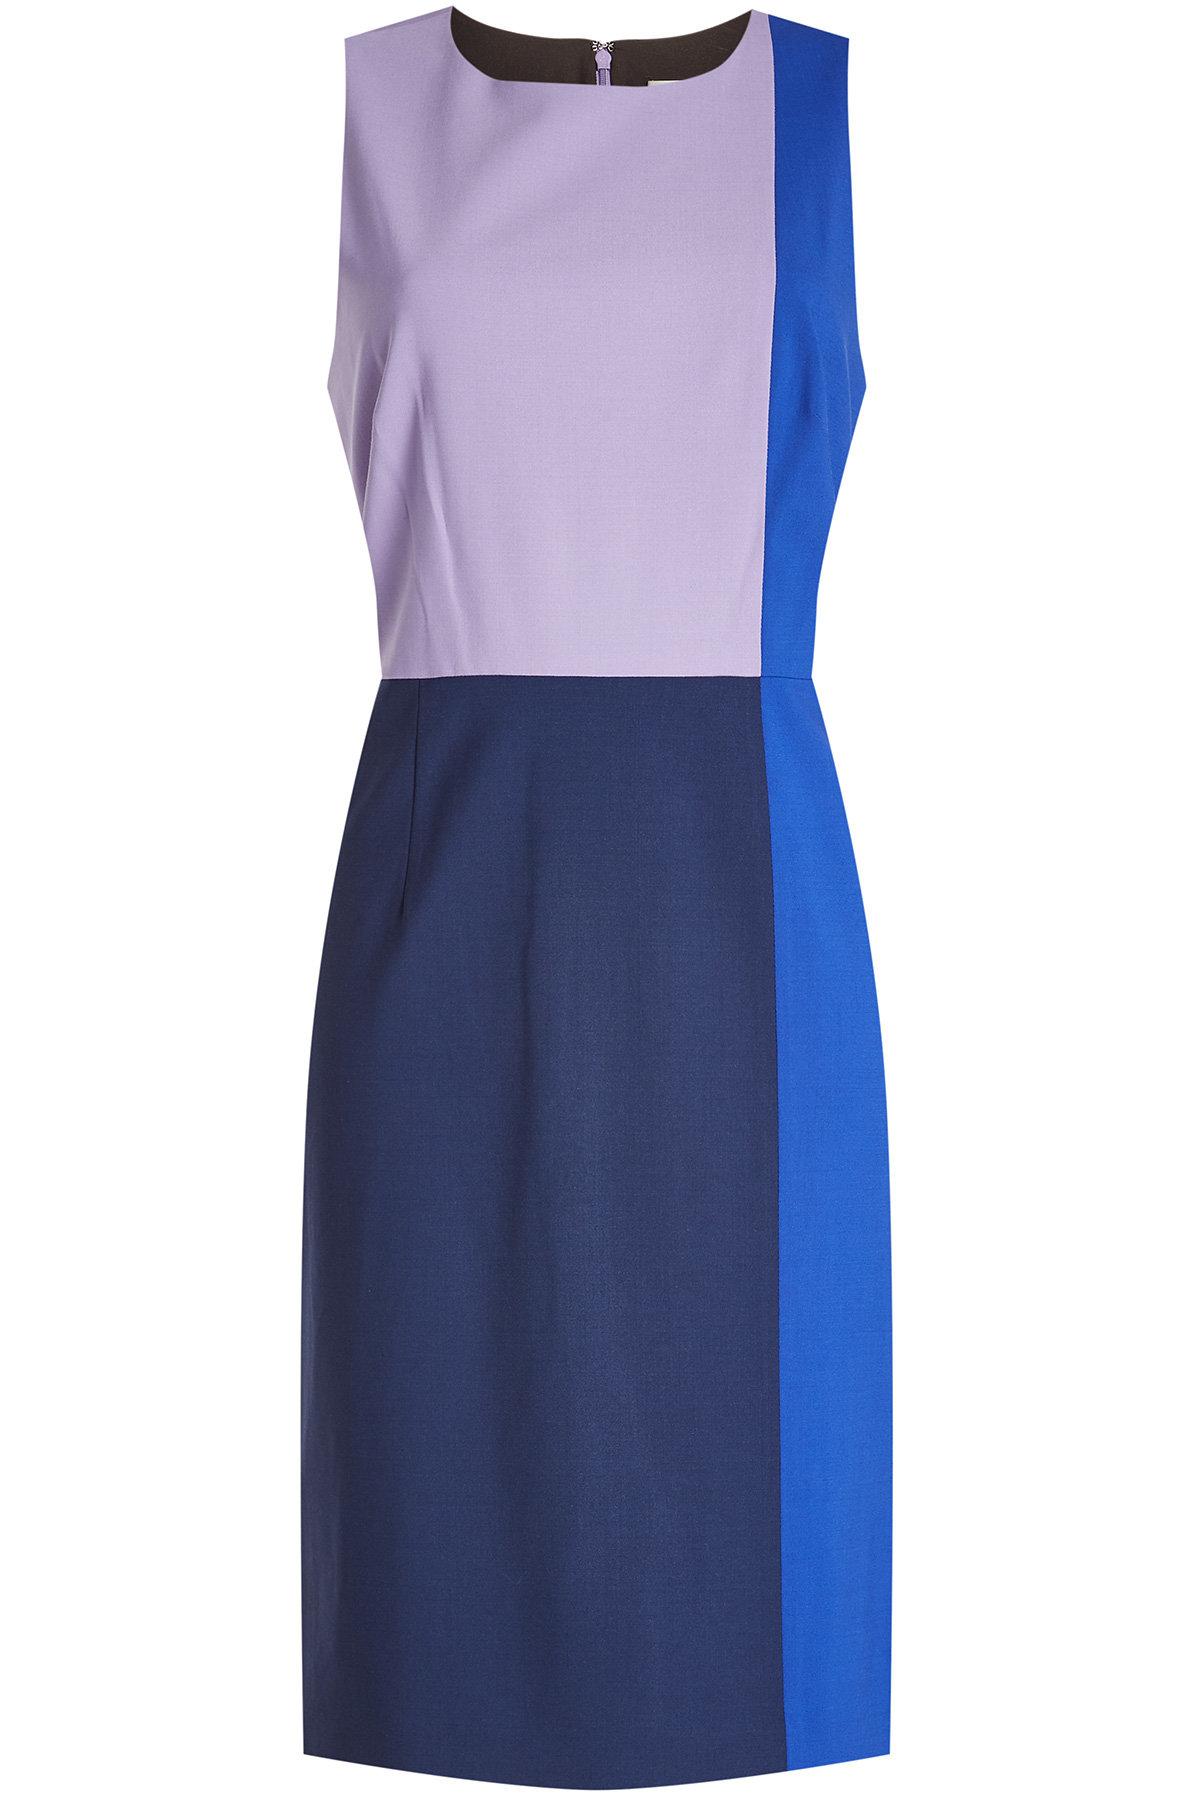 Lyst - Diane Von Furstenberg Color Block Dress in Blue